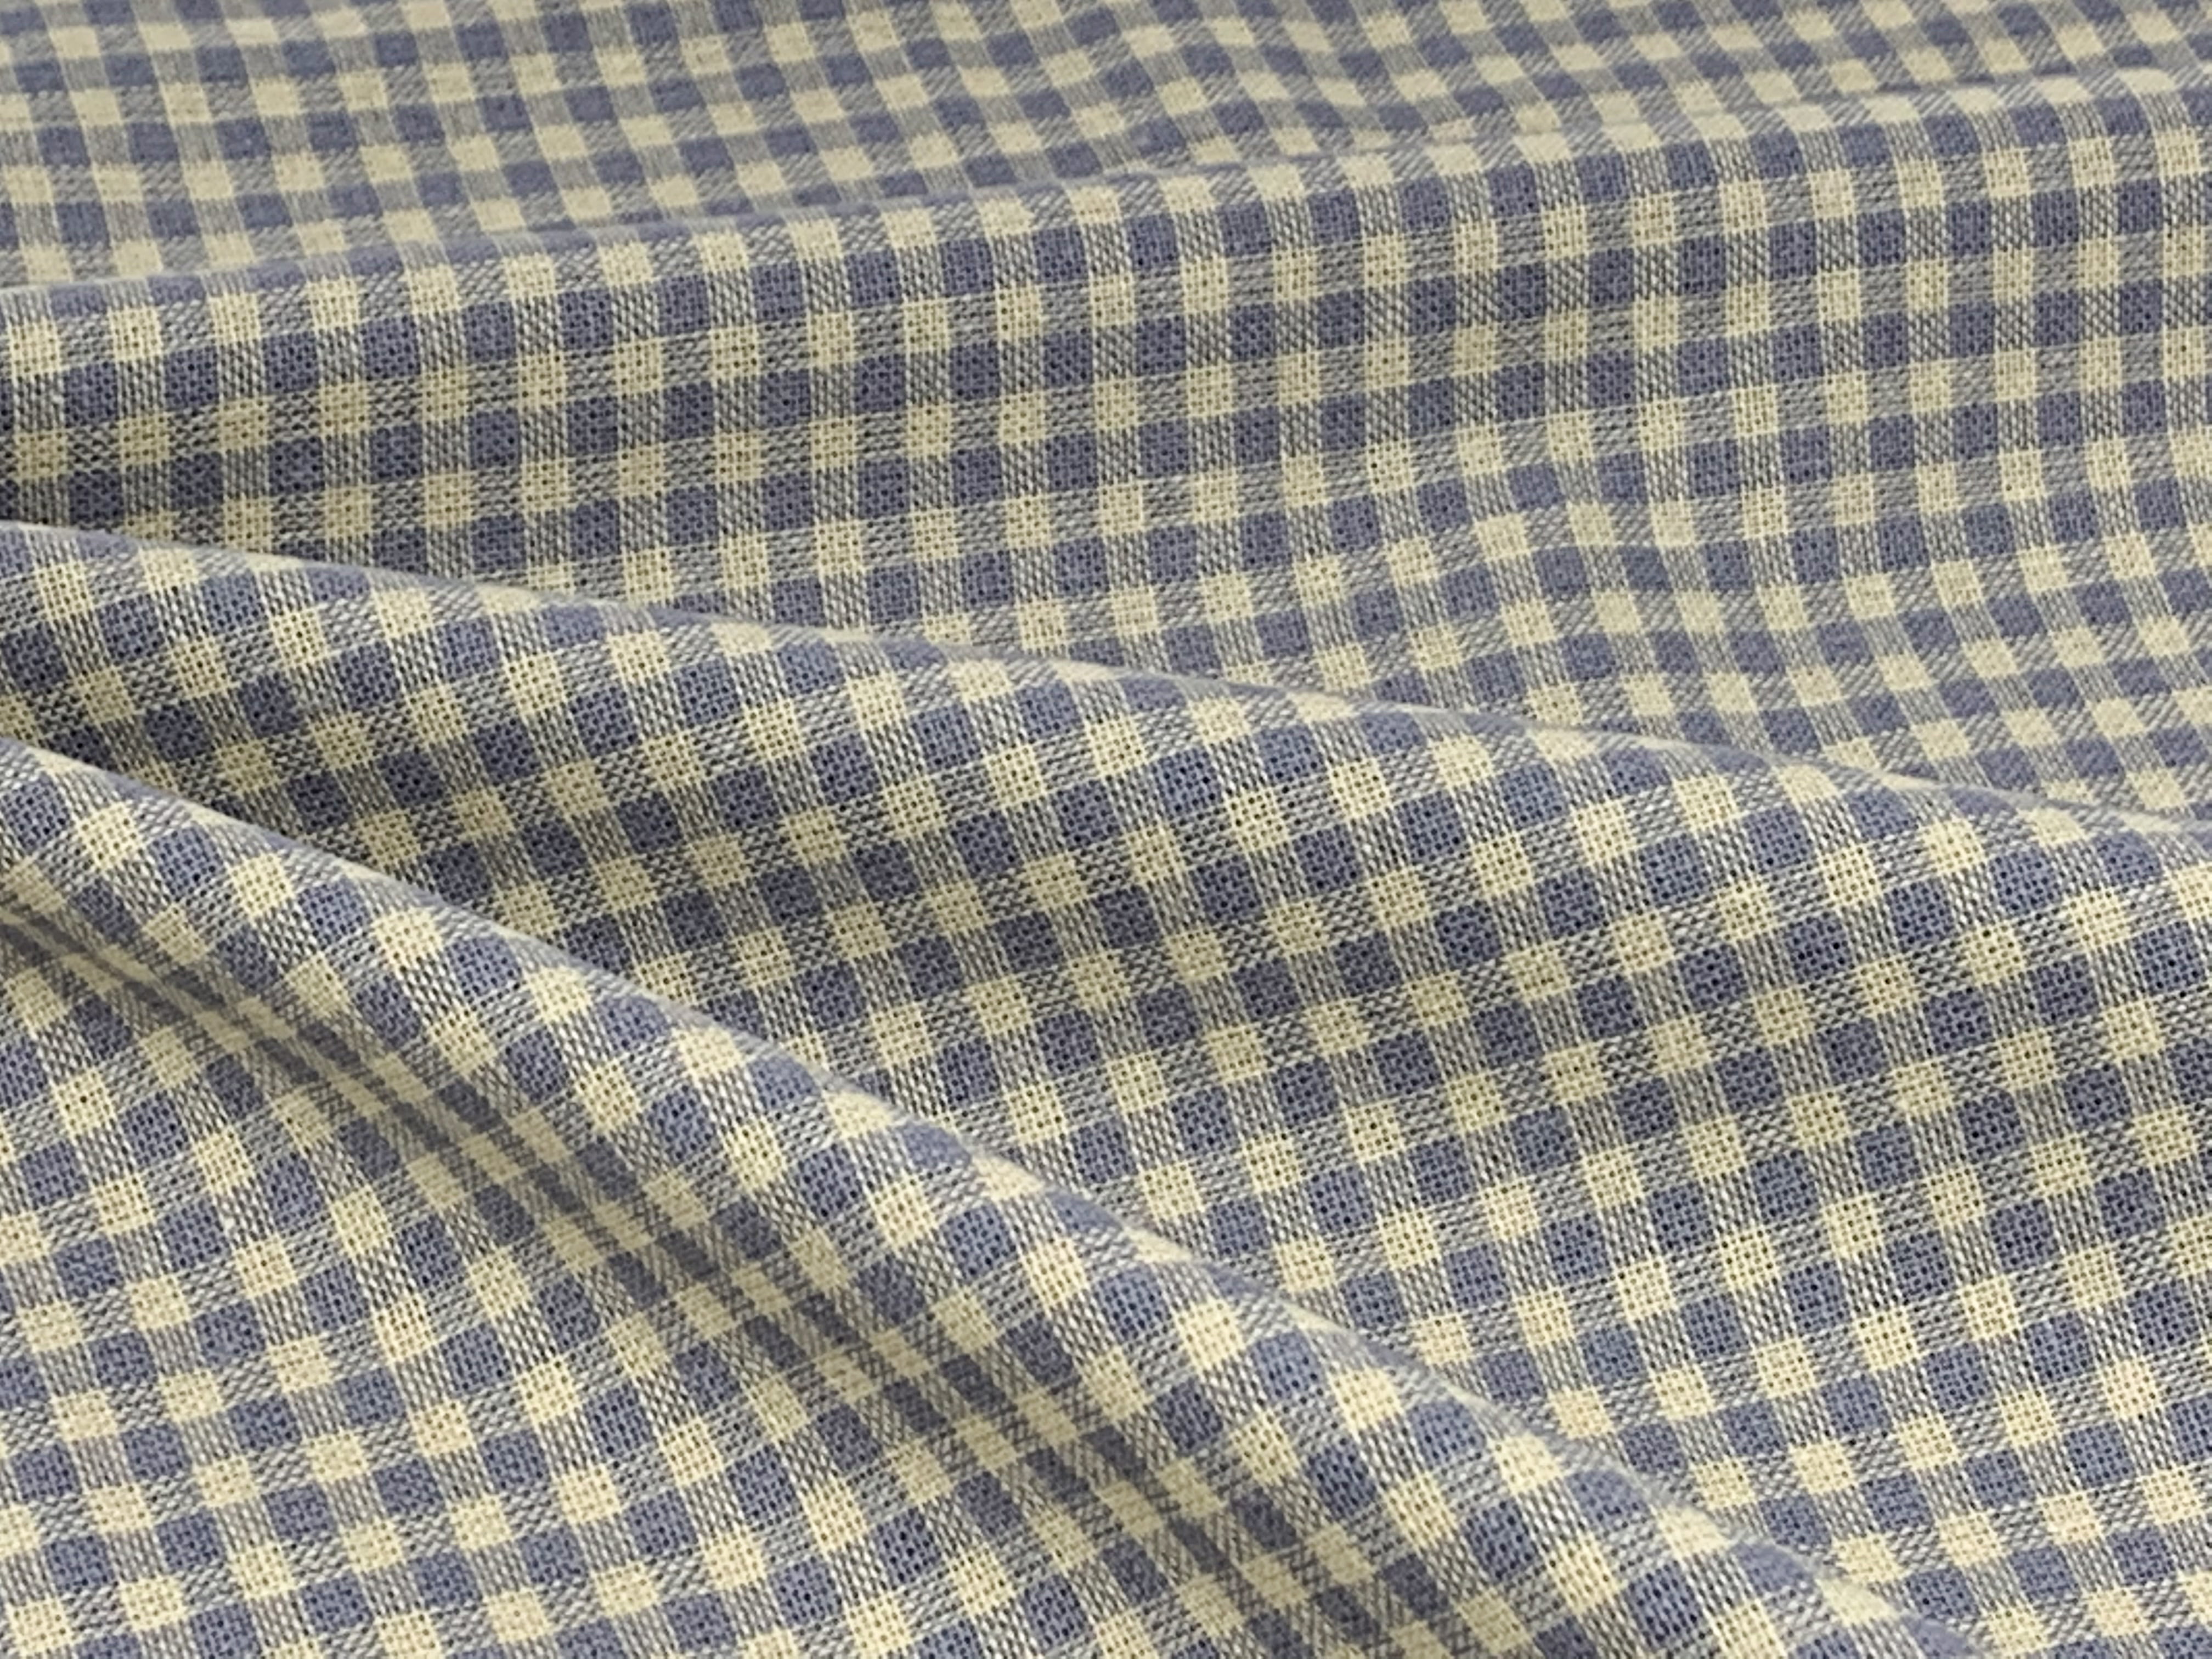 Gingham – Honest Fabric